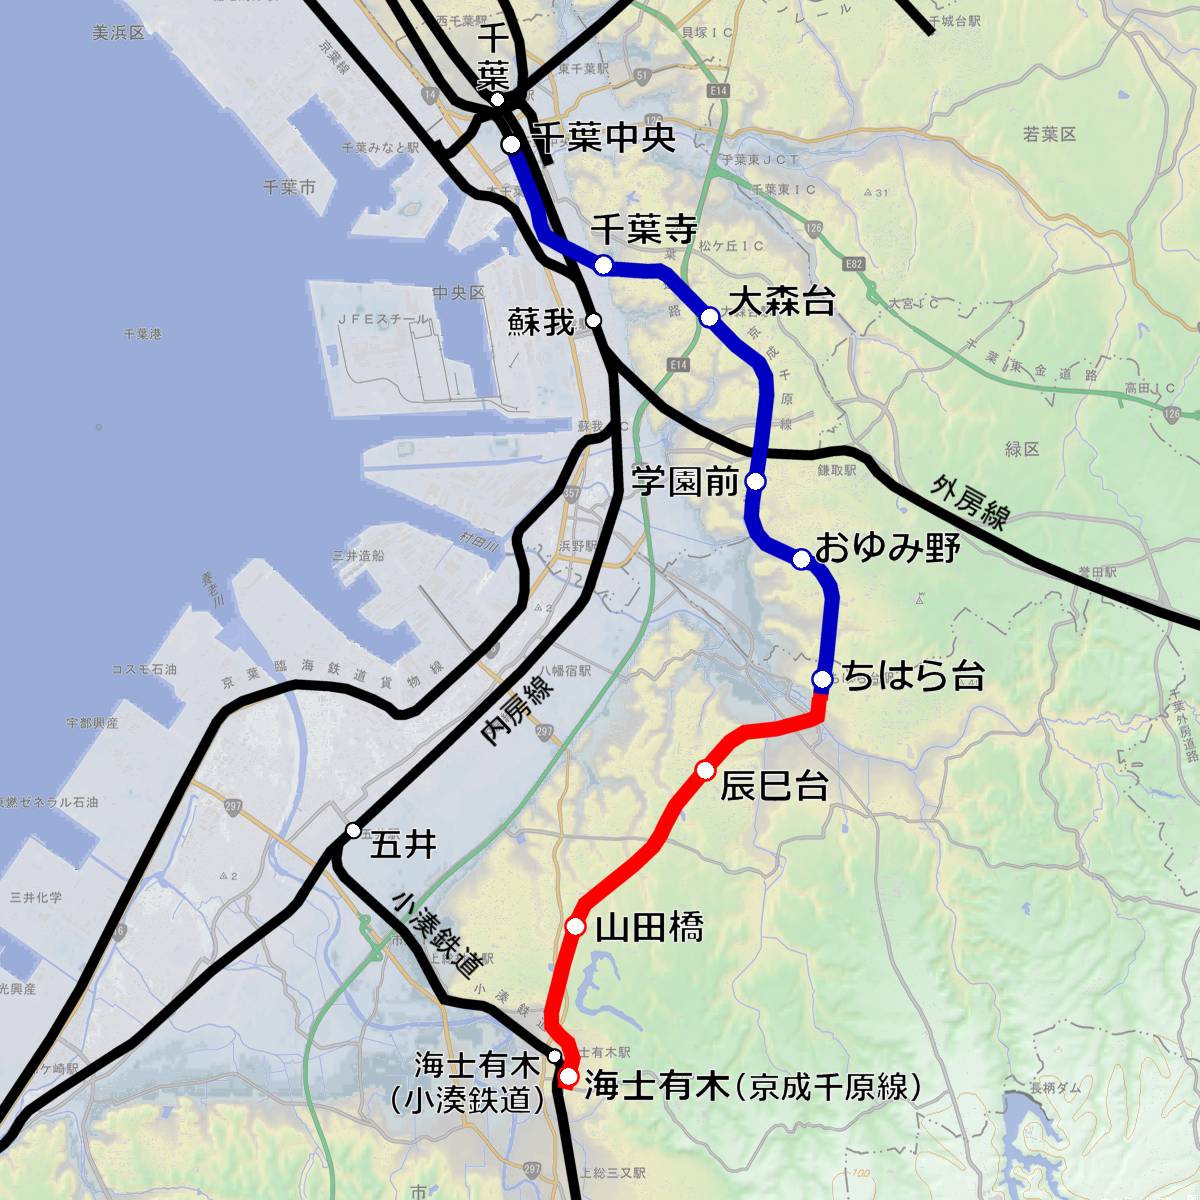 小湊 鉄道 路線 図